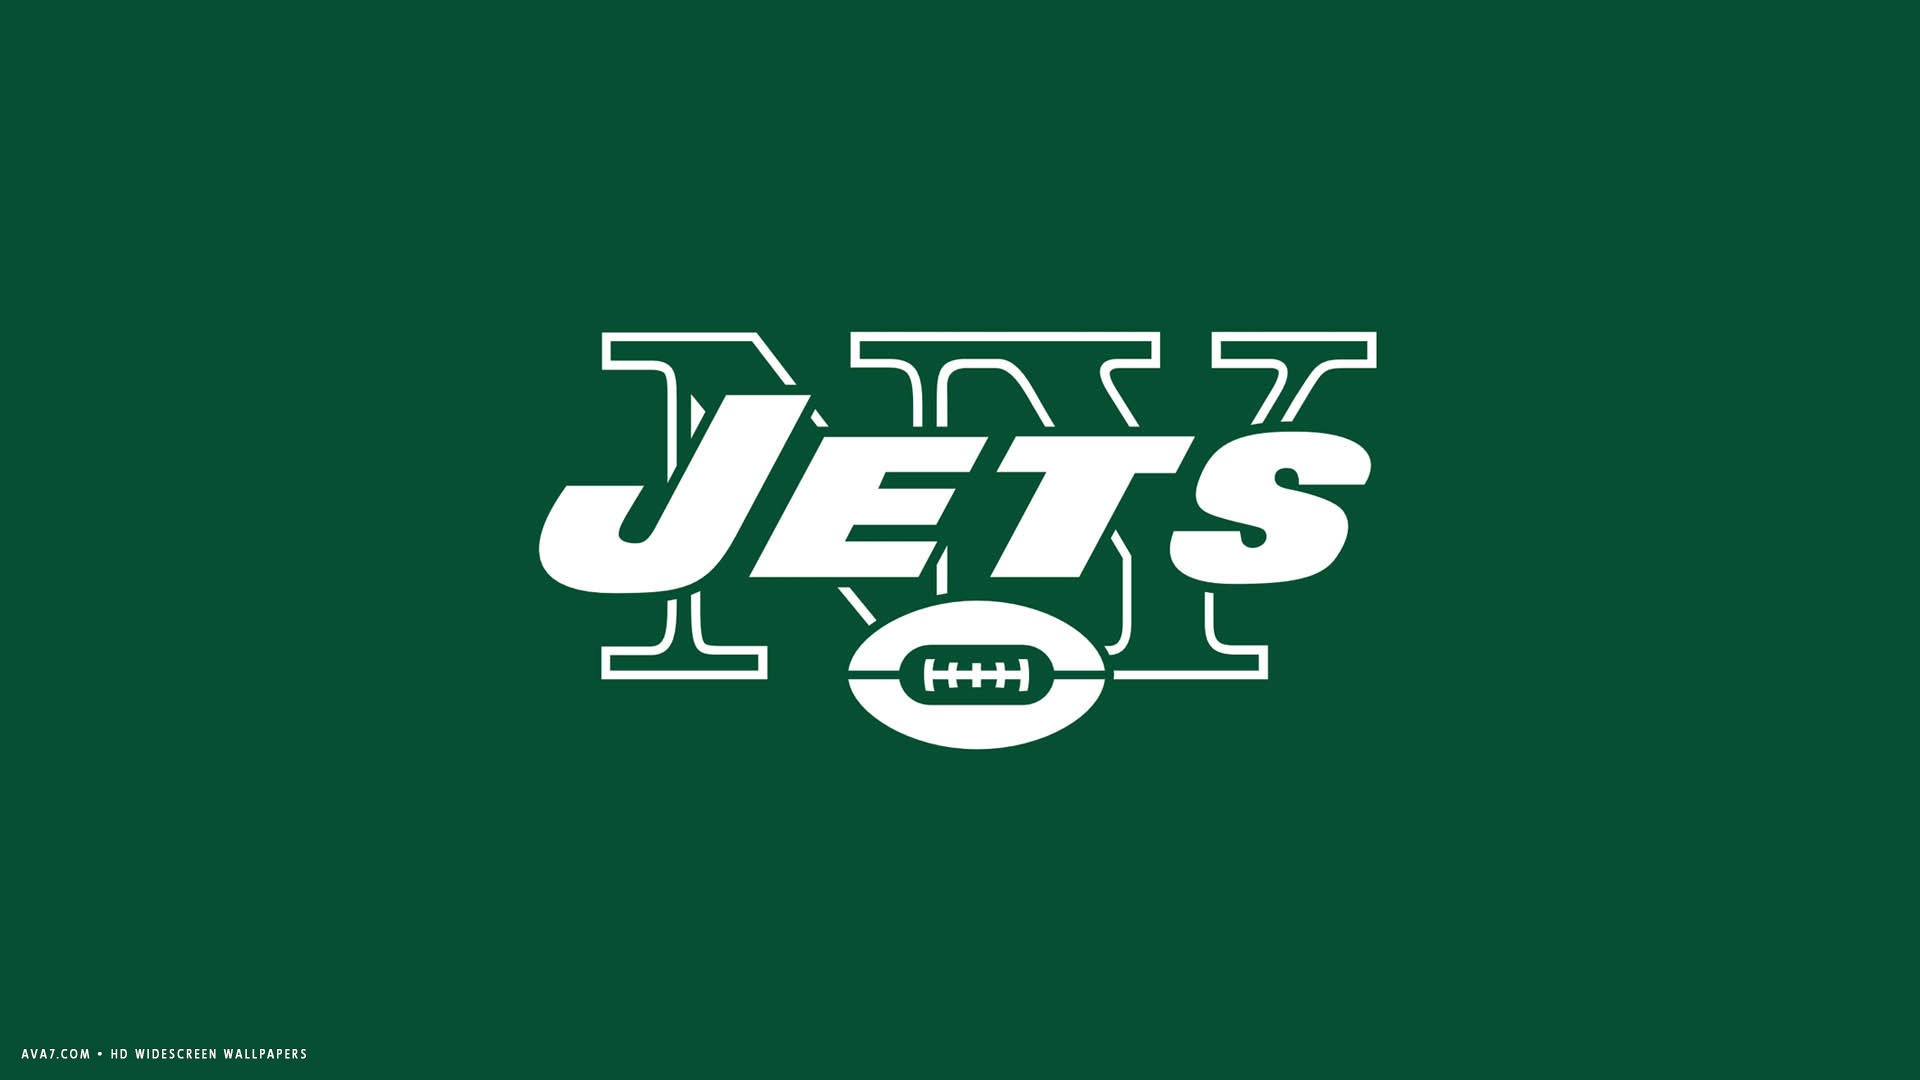 Nfl New York Jets Logo Green Wallpaper HD Widescreen